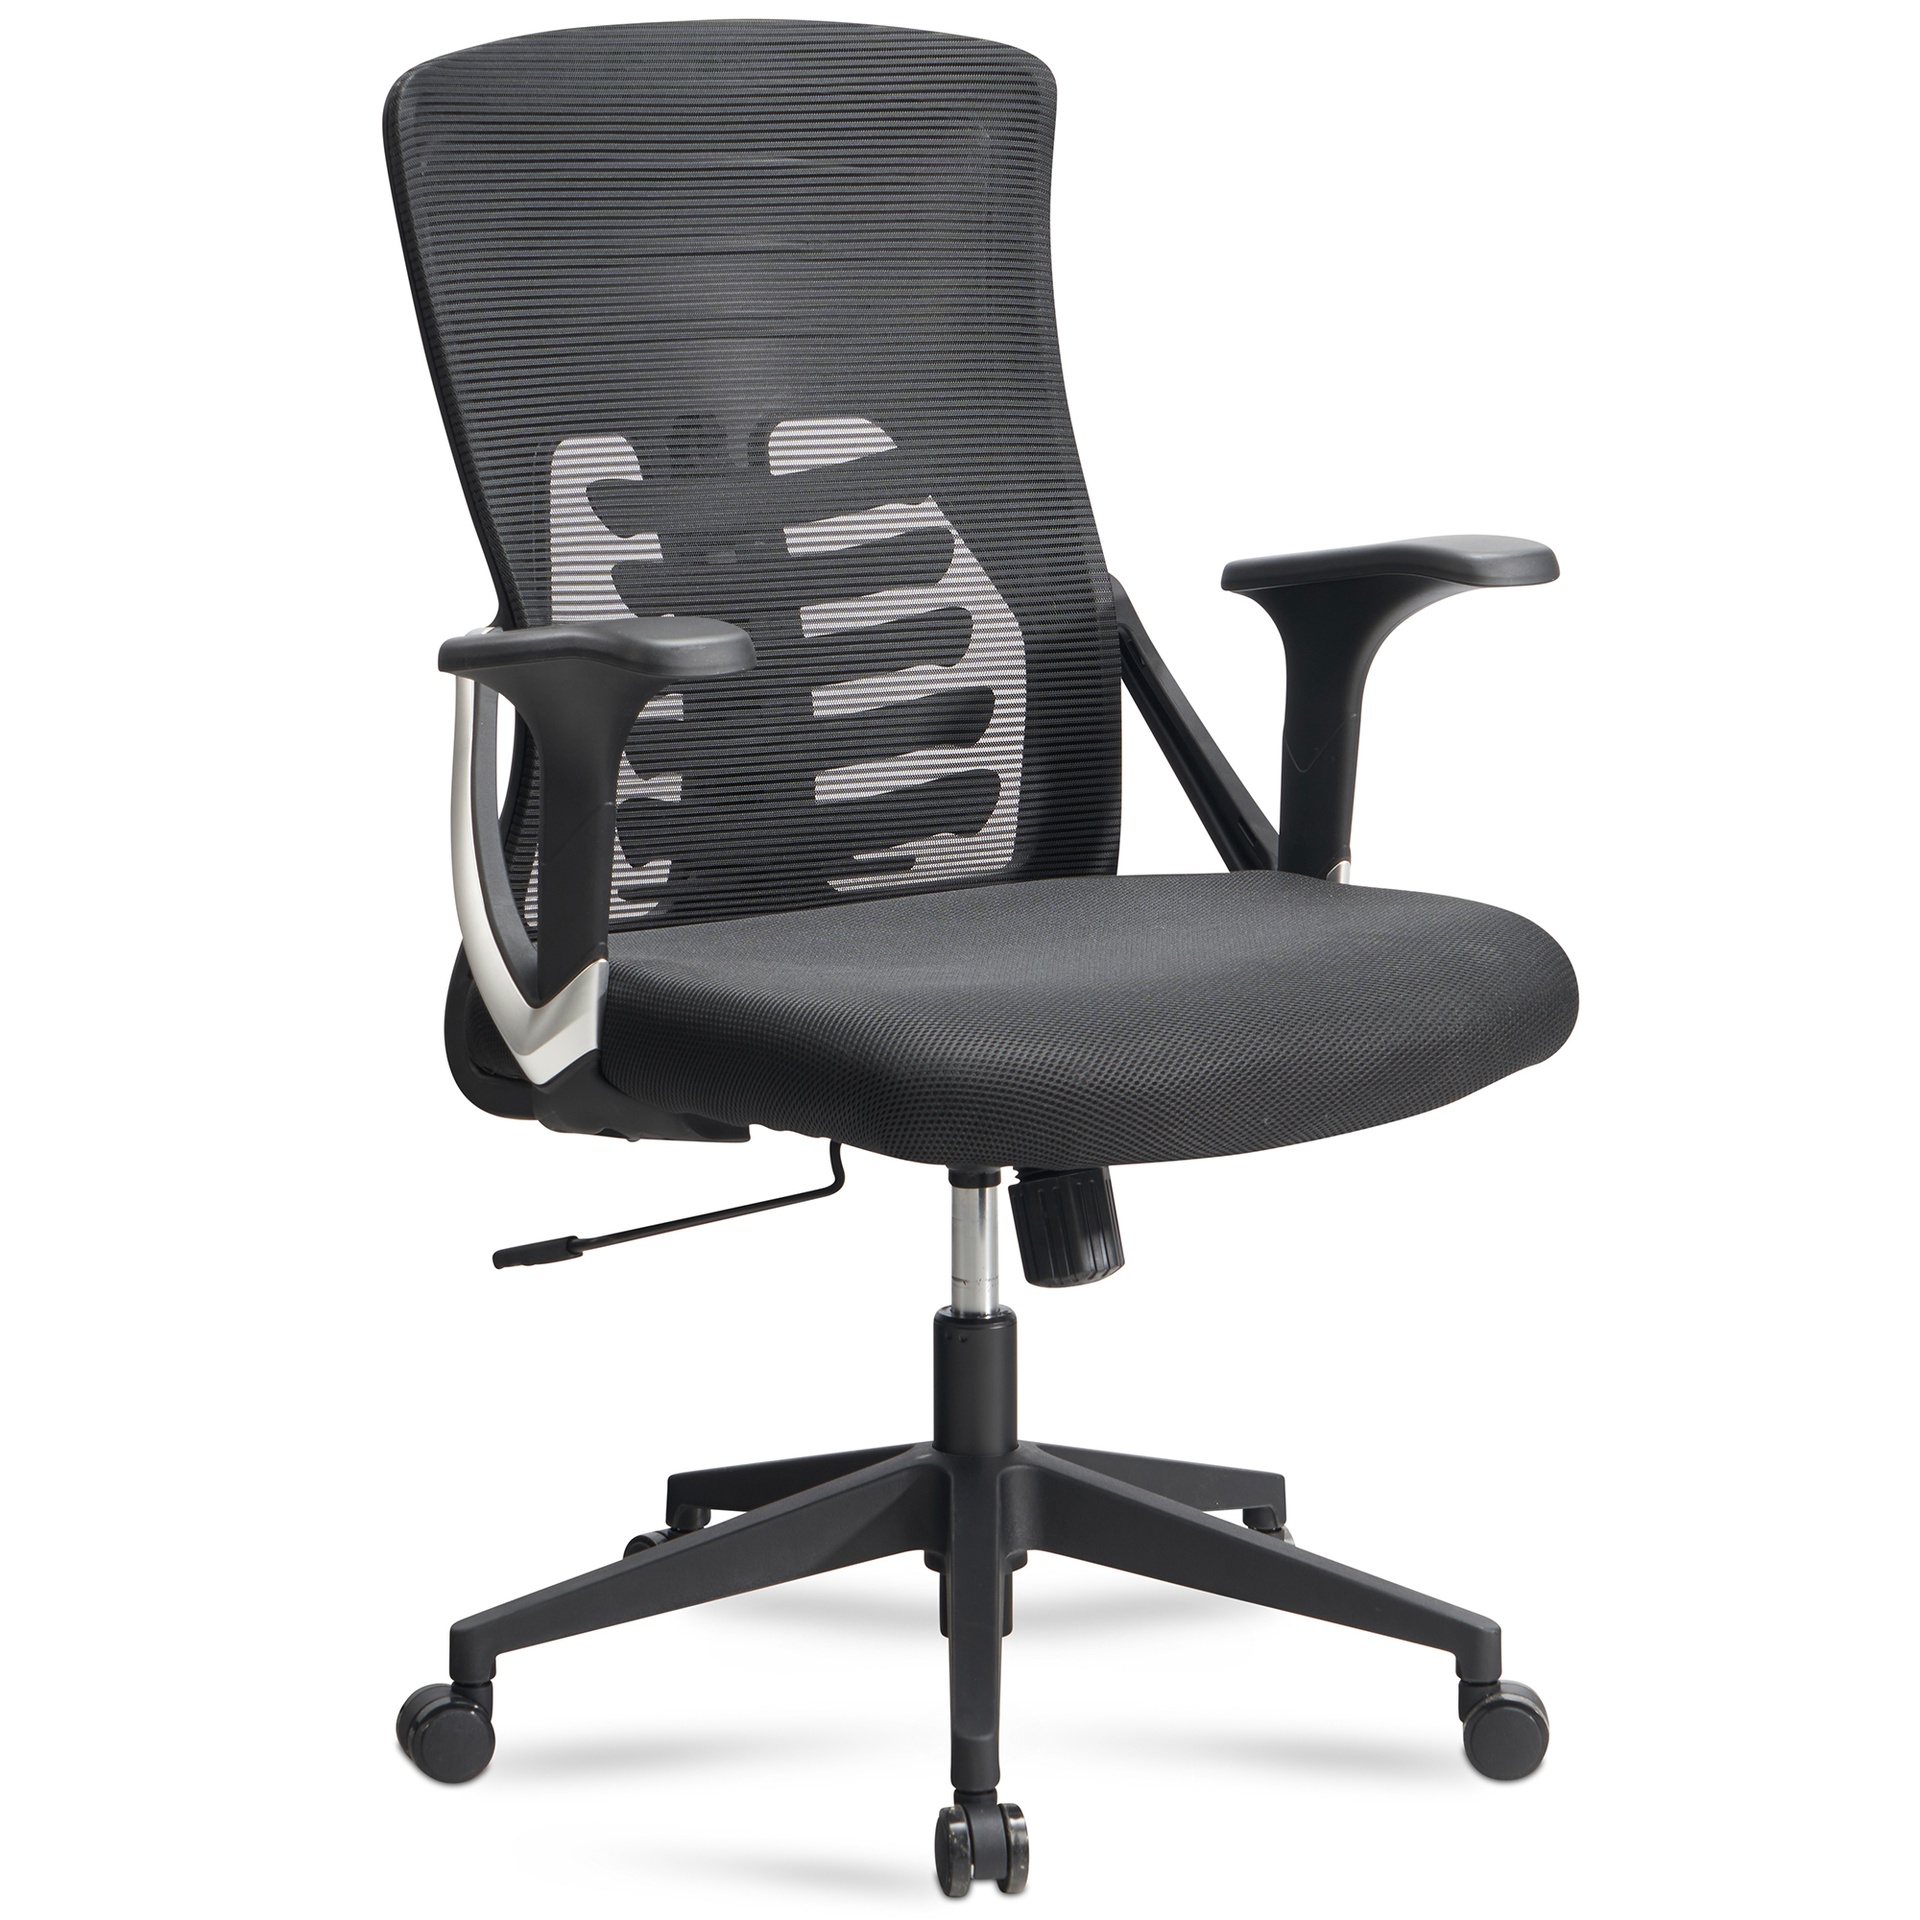 [A09503] Chaise de bureau housse en maille noire, jusqu'à 120 kg, réglable en hauteur avec support lombaire, ergonomique avec accoudoirs et fonction bascule